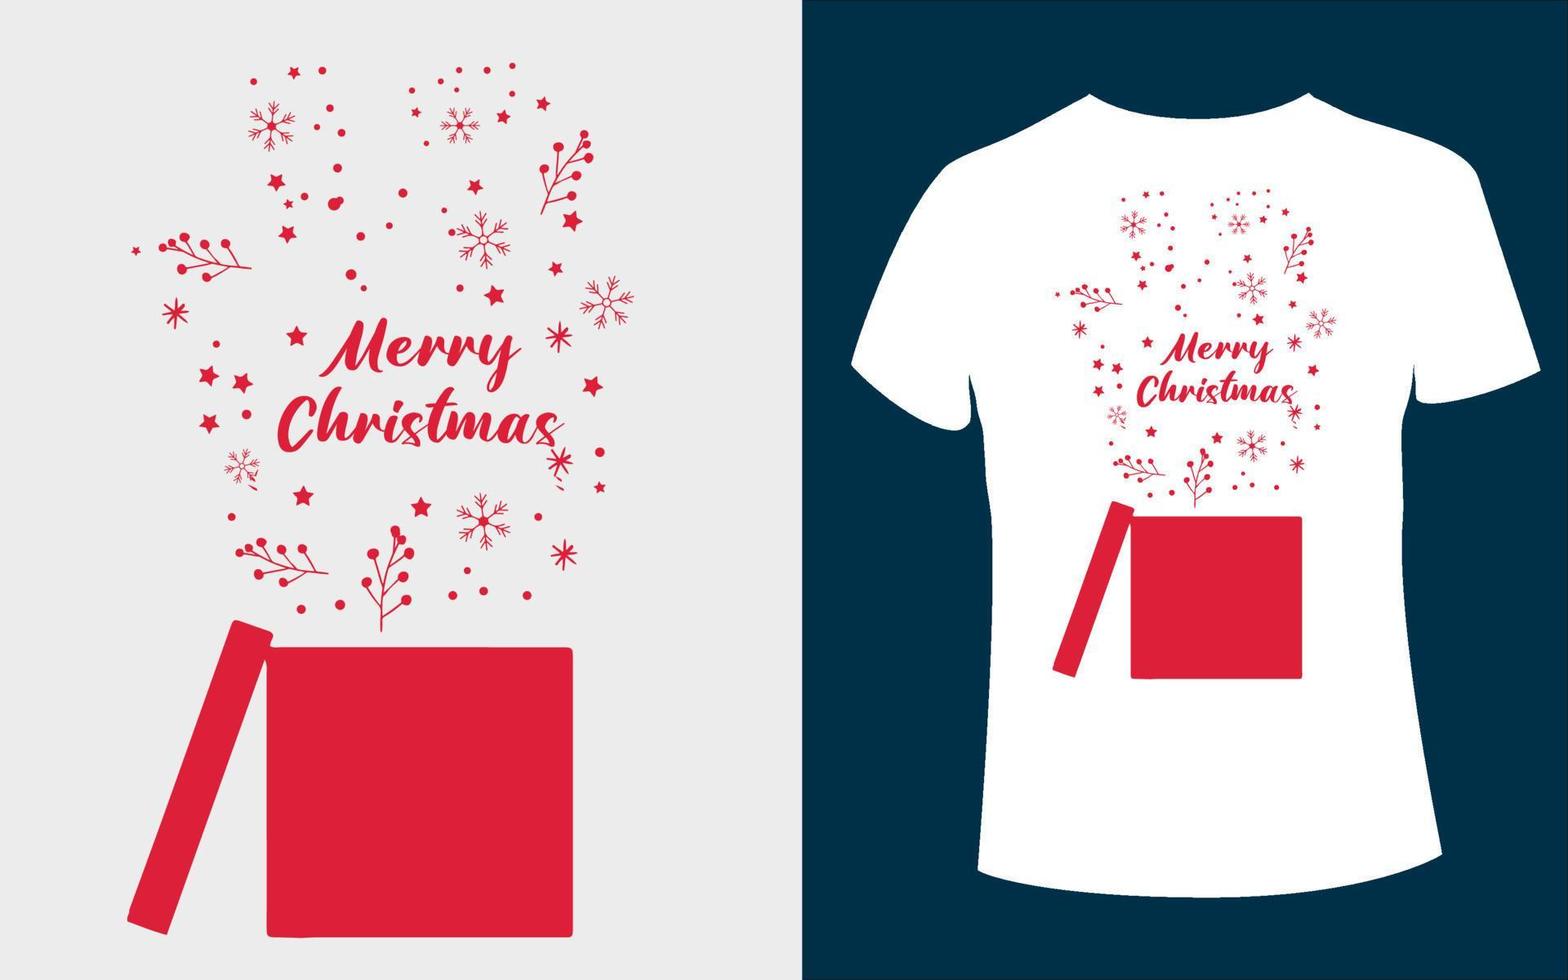 T-Shirt-Design der frohen Weihnachten mit bearbeitbarem Vektor